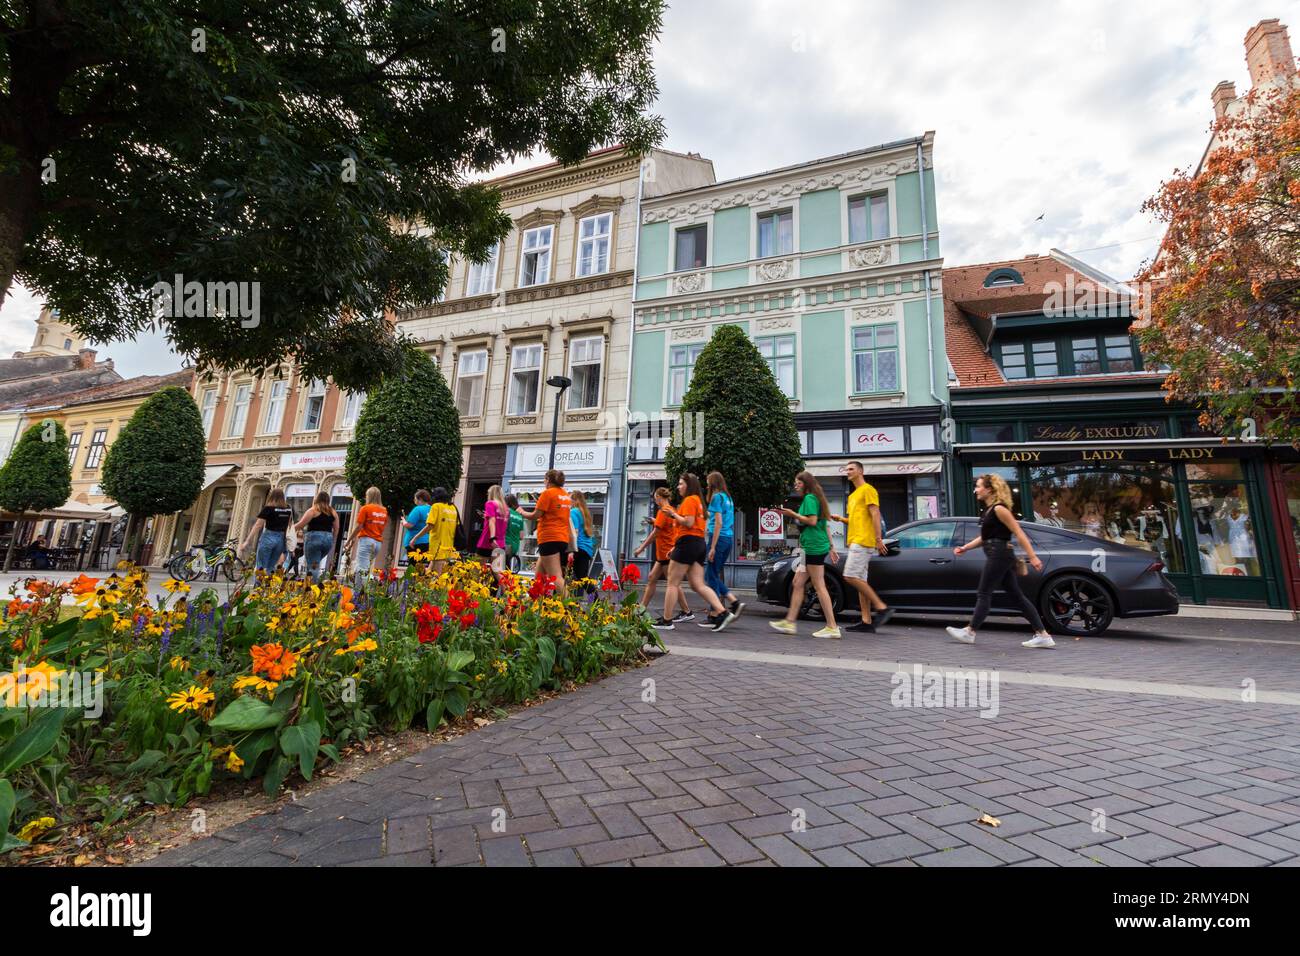 Gli studenti della Sopron University camminano vestiti con magliette colorate a Varkerulet durante la Freshers' Week, Sopron, Ungheria Foto Stock